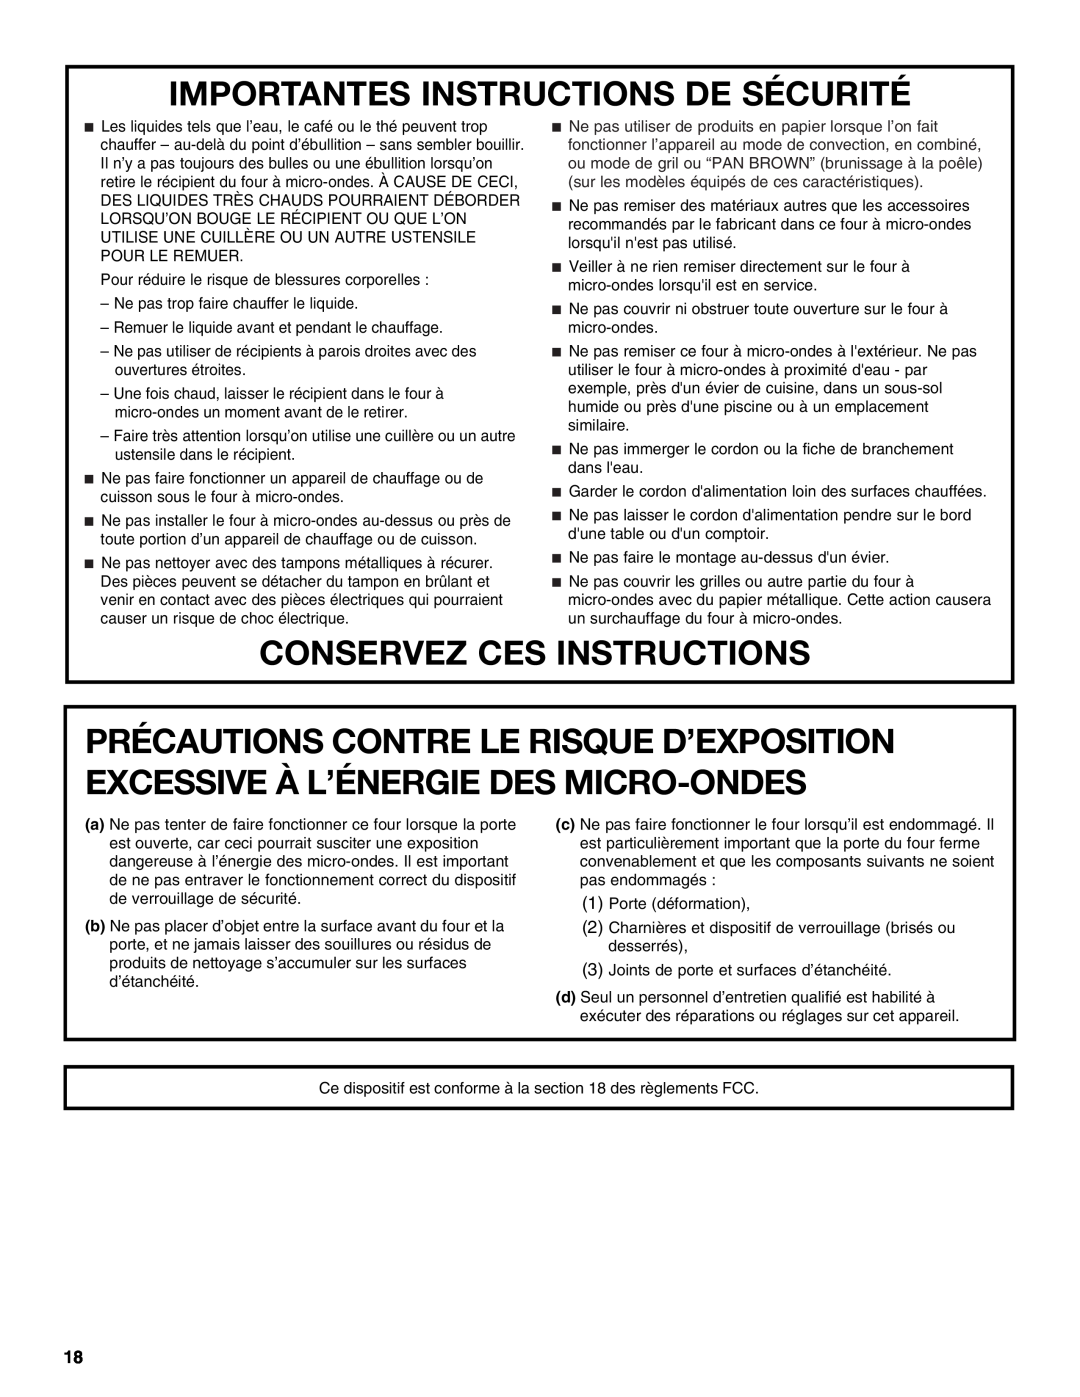 Whirlpool WMC10511AB manual Importantes Instructions De Sécurité, Conservez Ces Instructions 